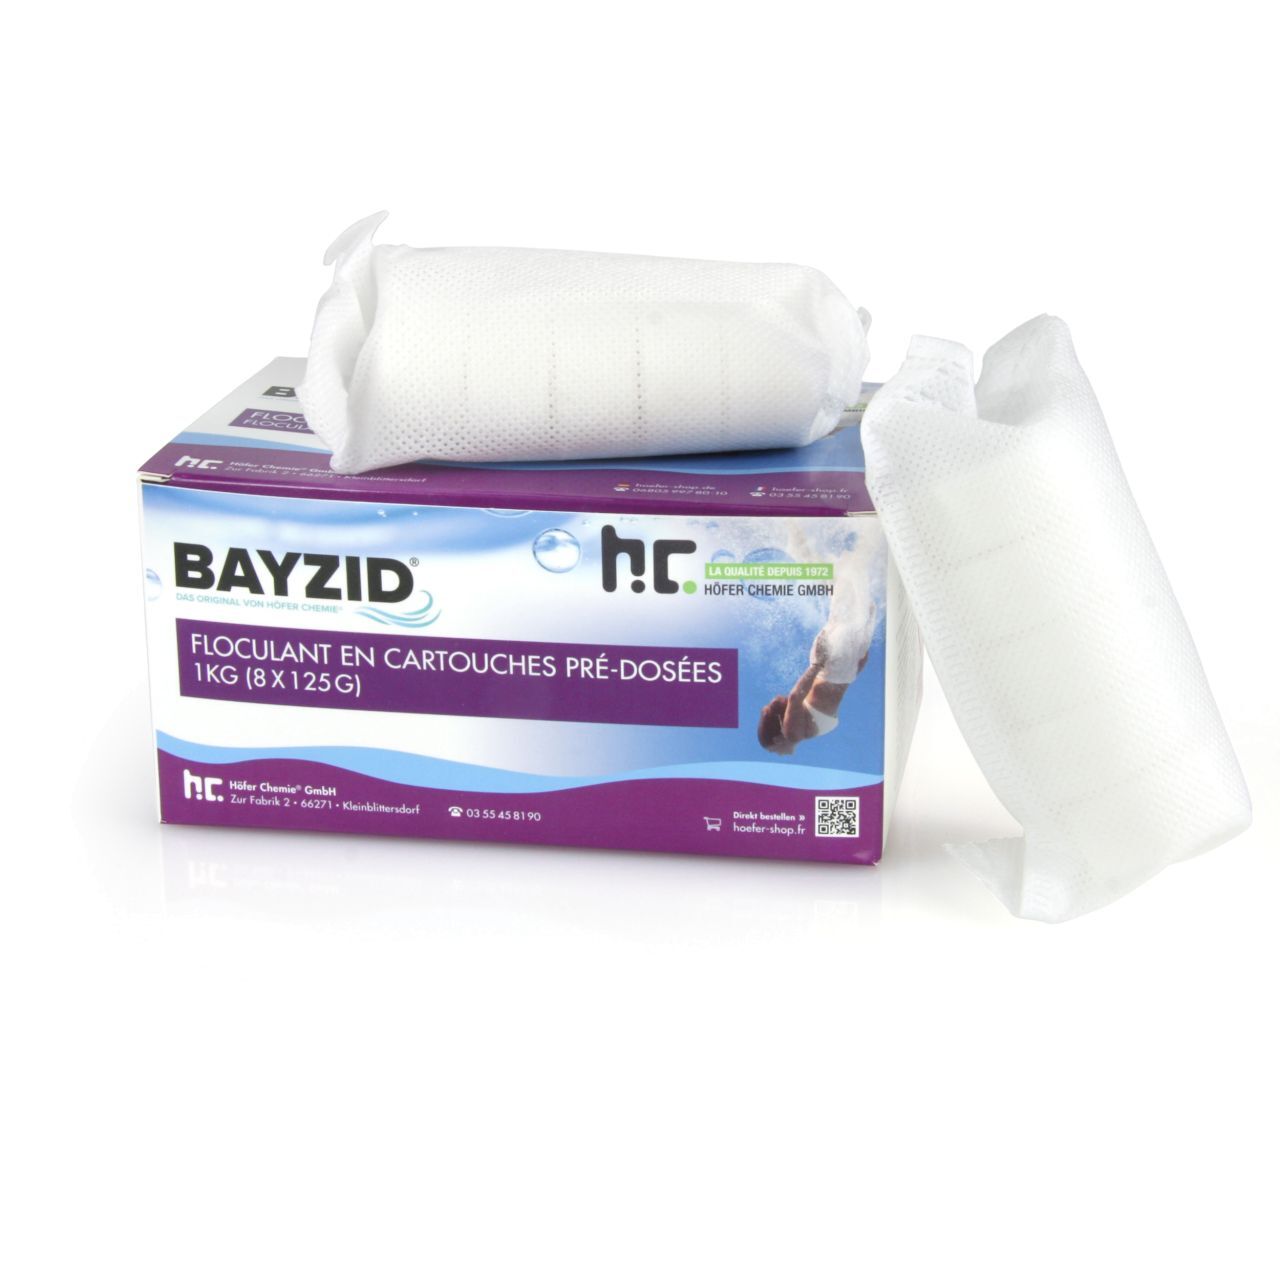 BAYZID 24 kg BAYZID® Cartouches de floculant pré-dosées (8x 125g) (24 x 1 kg)